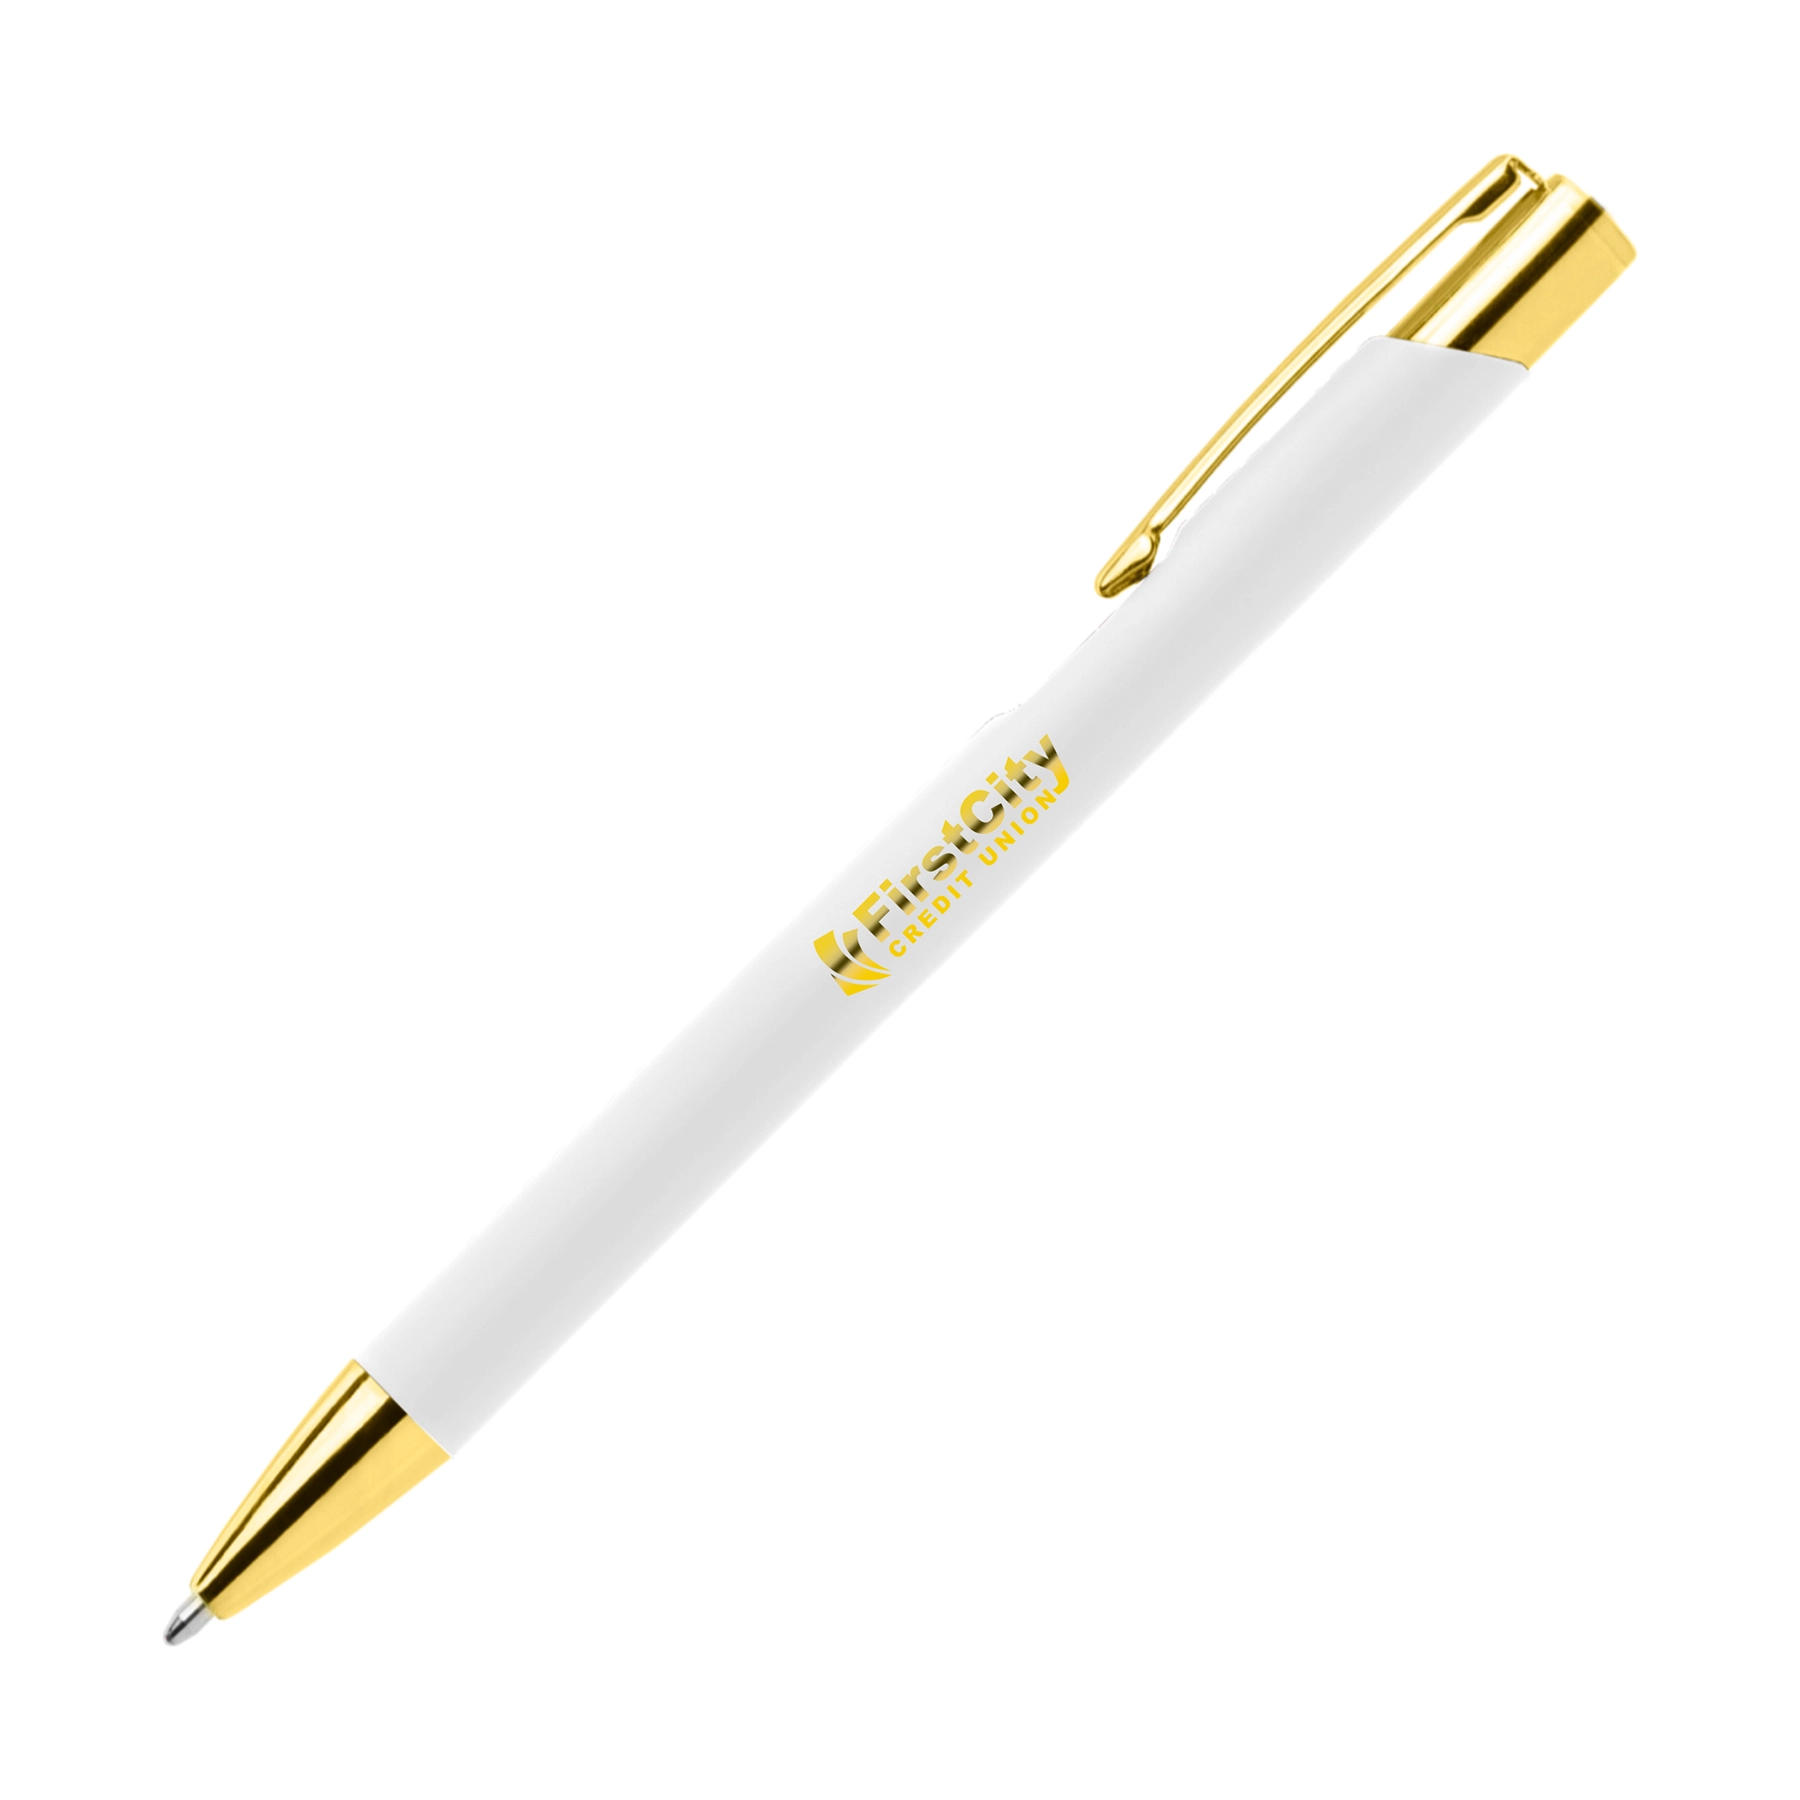 Le migliori penne aziendali con incisioni personalizzate 